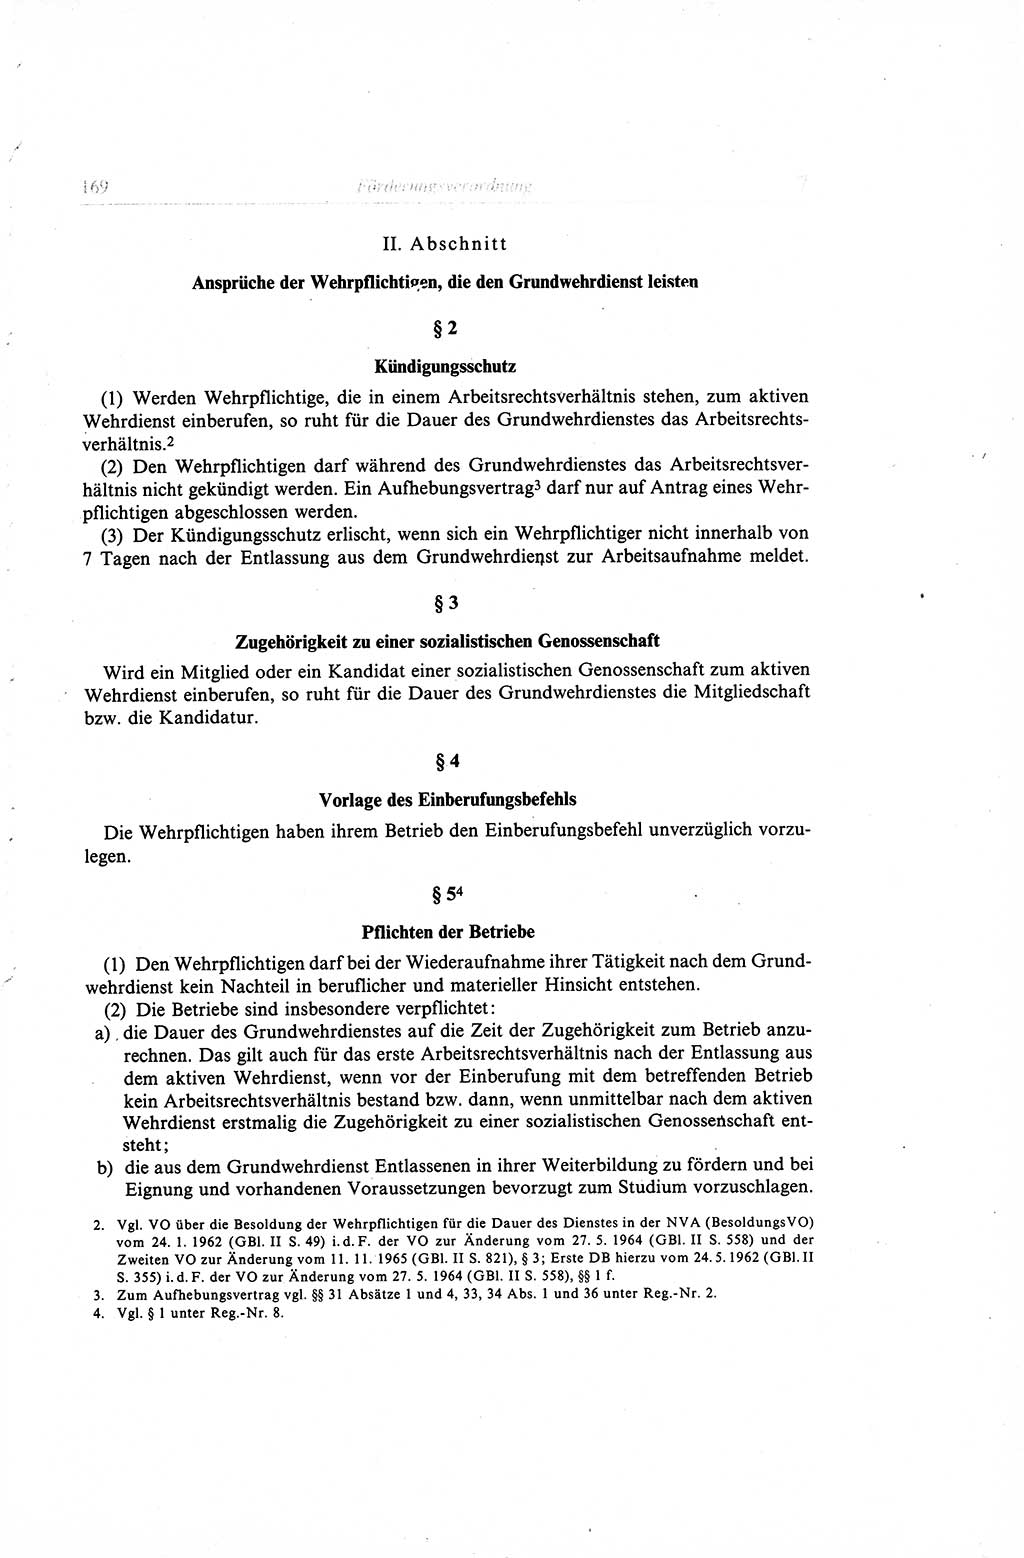 Gesetzbuch der Arbeit (GBA) und andere ausgewählte rechtliche Bestimmungen [Deutsche Demokratische Republik (DDR)] 1968, Seite 169 (GBA DDR 1968, S. 169)